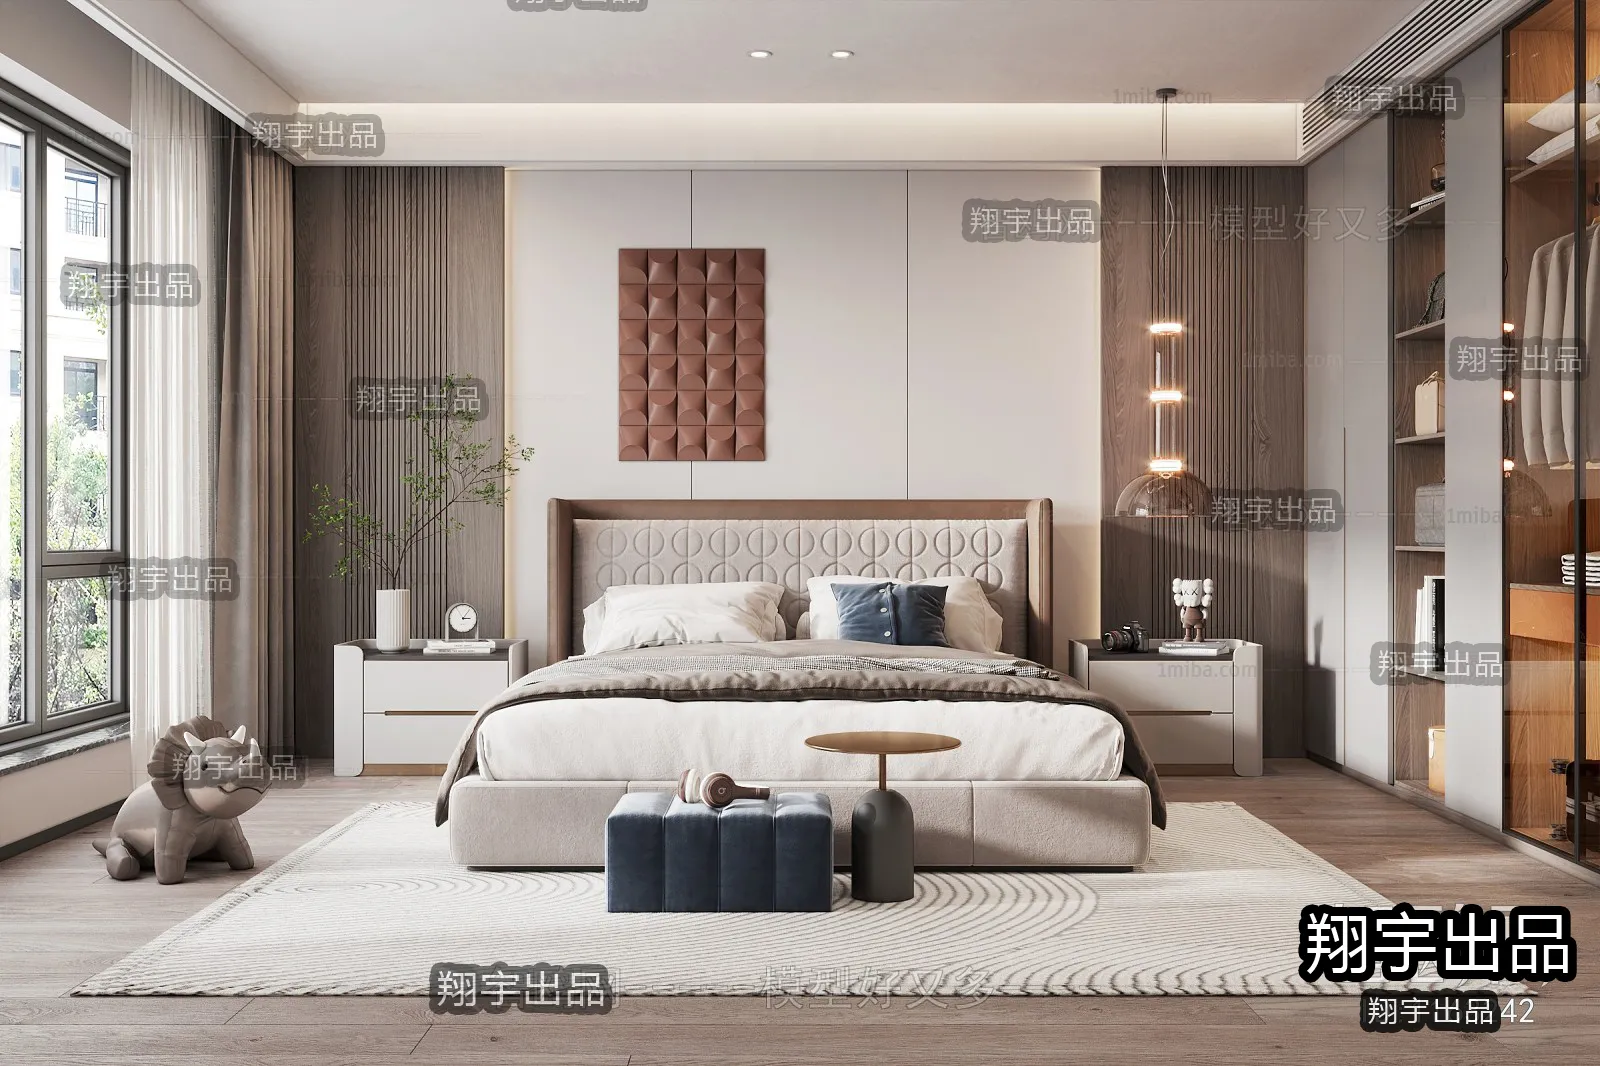 Bedroom – Modern Interior Design – 3D Models – 034